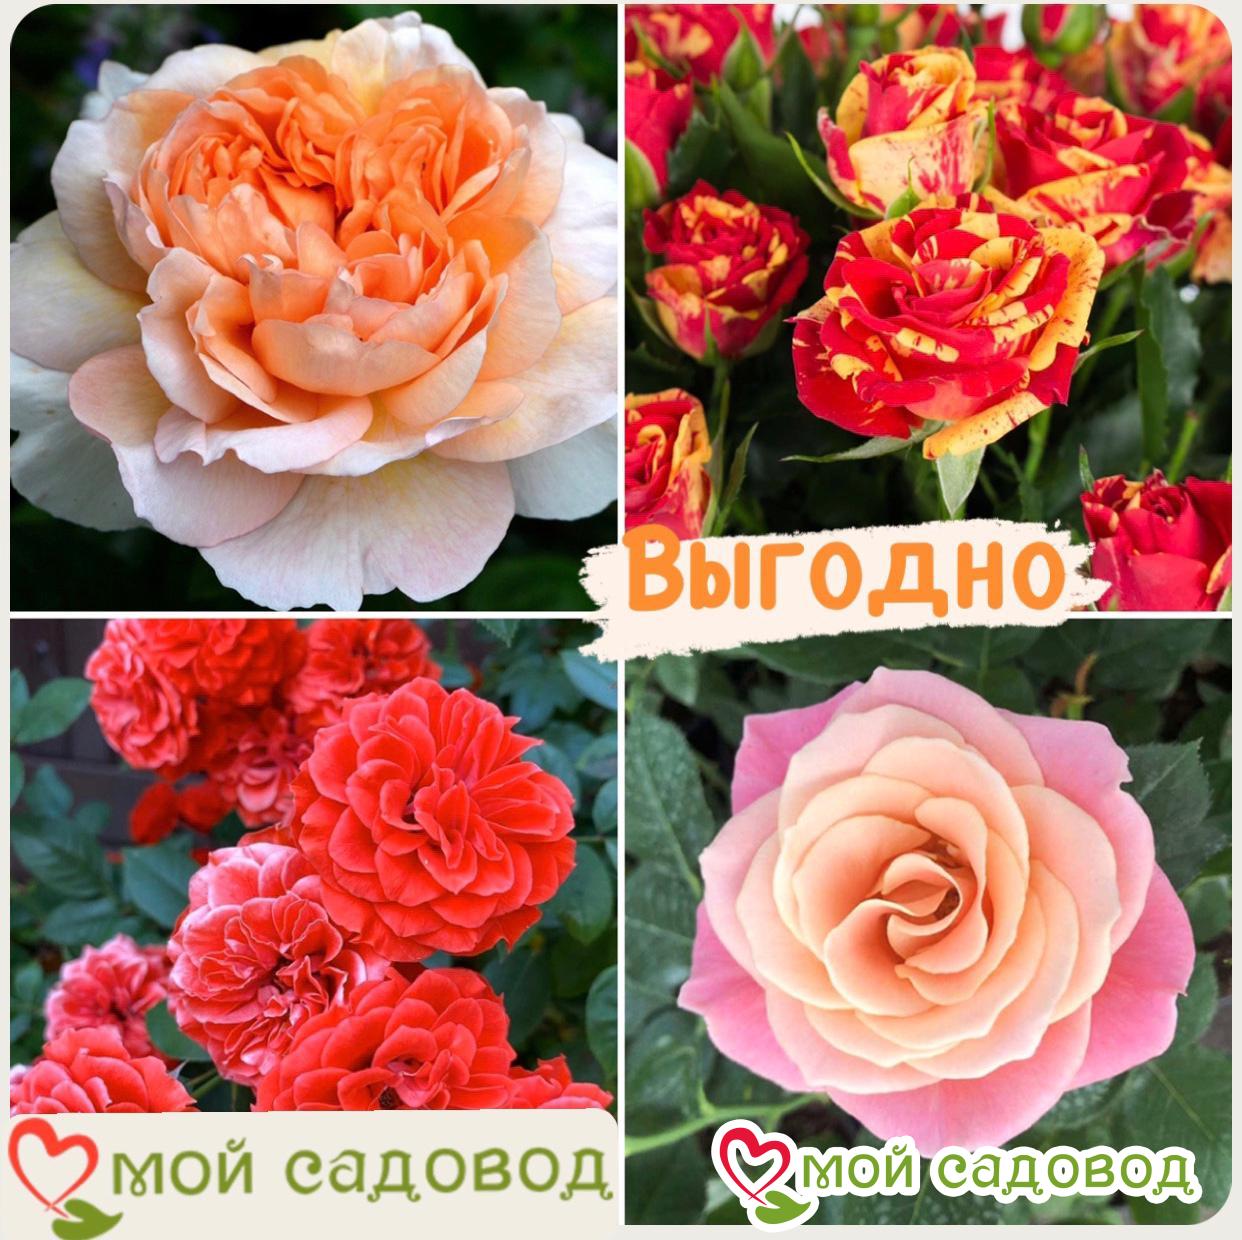 Комплект роз! Роза плетистая, спрей, чайн-гибридная и Английская роза в одном комплекте